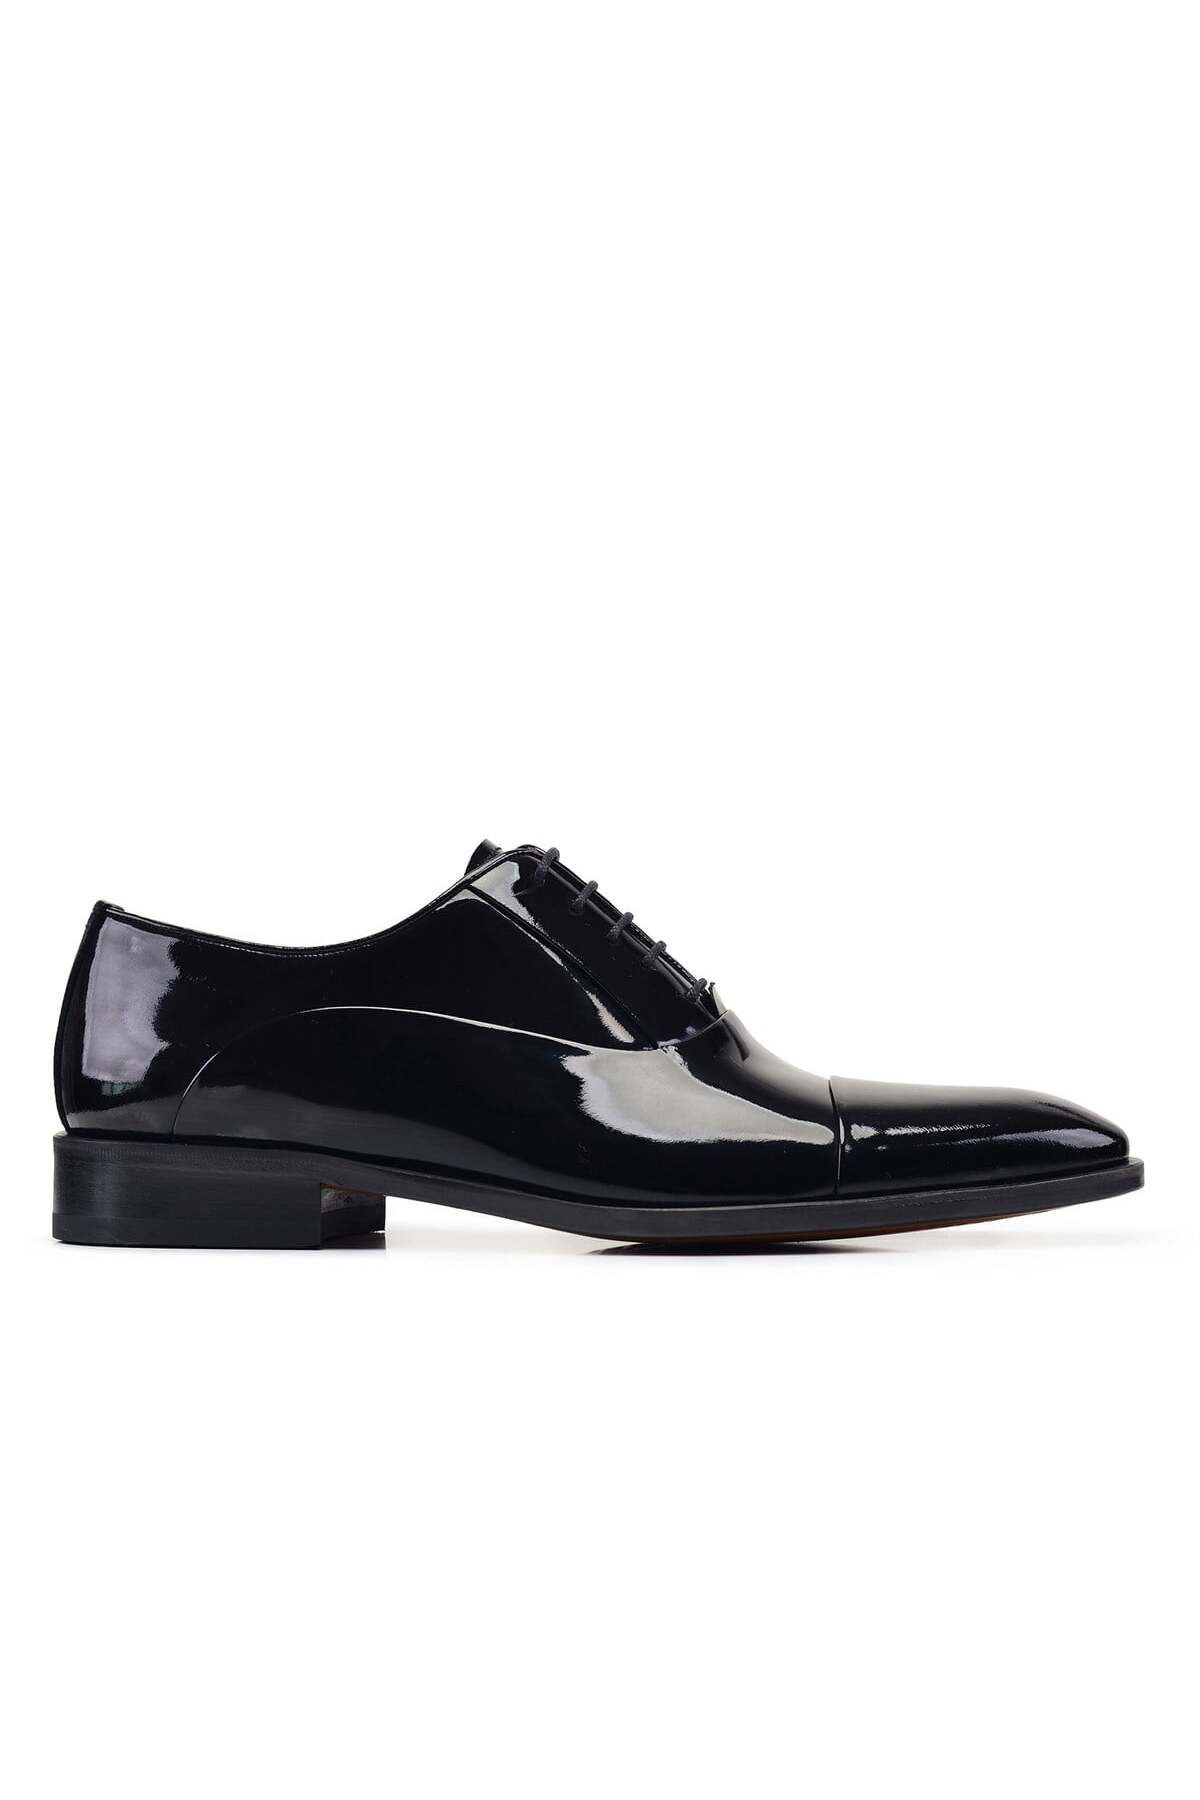 Nevzat Onay Siyah Klasik Bağcıklı Kösele Erkek Ayakkabı -02702-